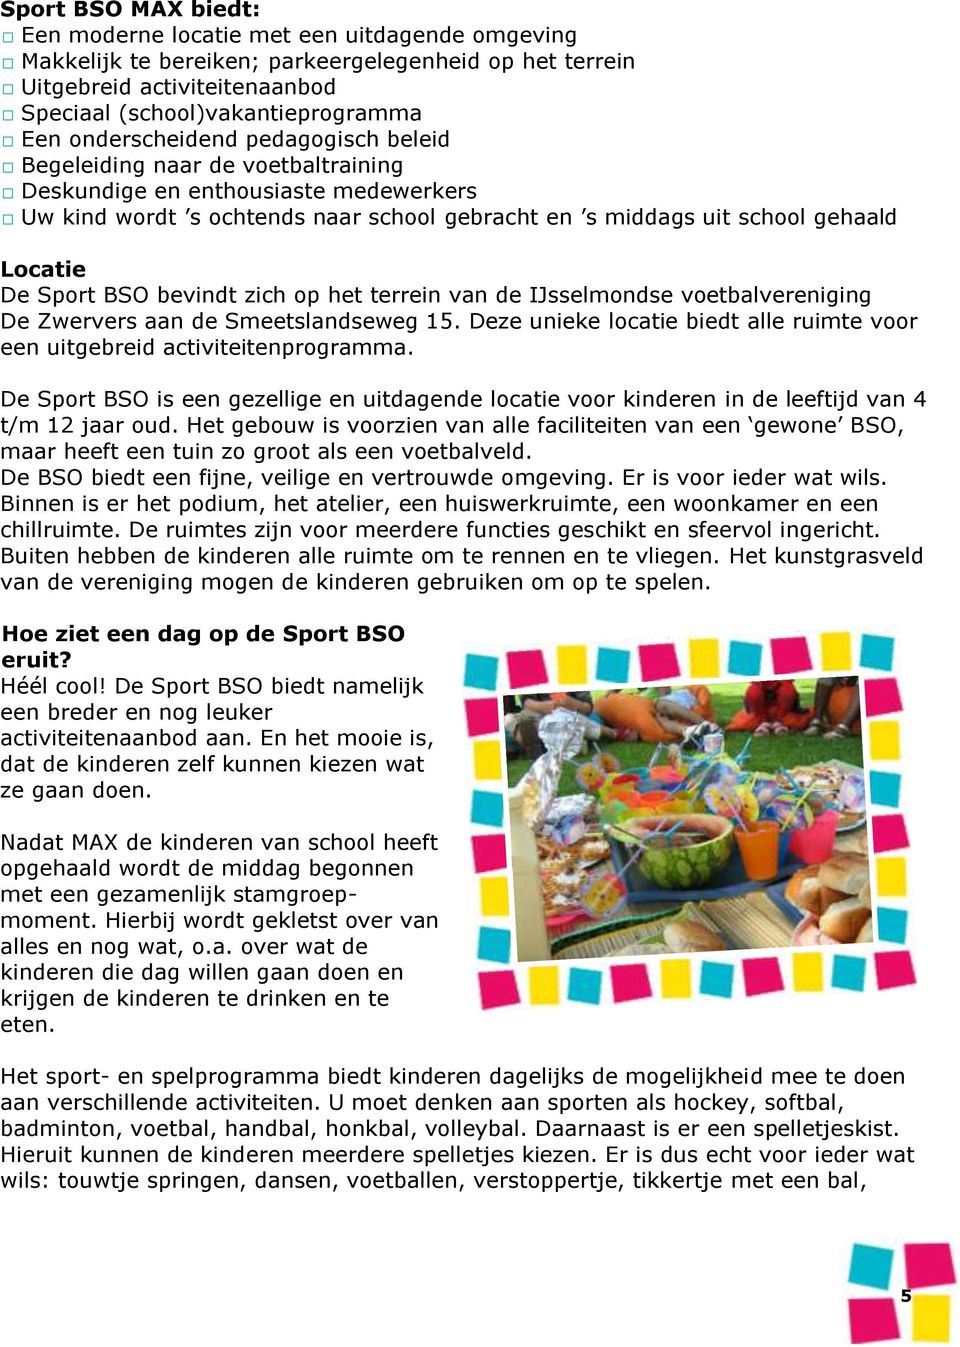 Sport BSO bevindt zich op het terrein van de IJsselmondse voetbalvereniging De Zwervers aan de Smeetslandseweg 15. Deze unieke locatie biedt alle ruimte voor een uitgebreid activiteitenprogramma.